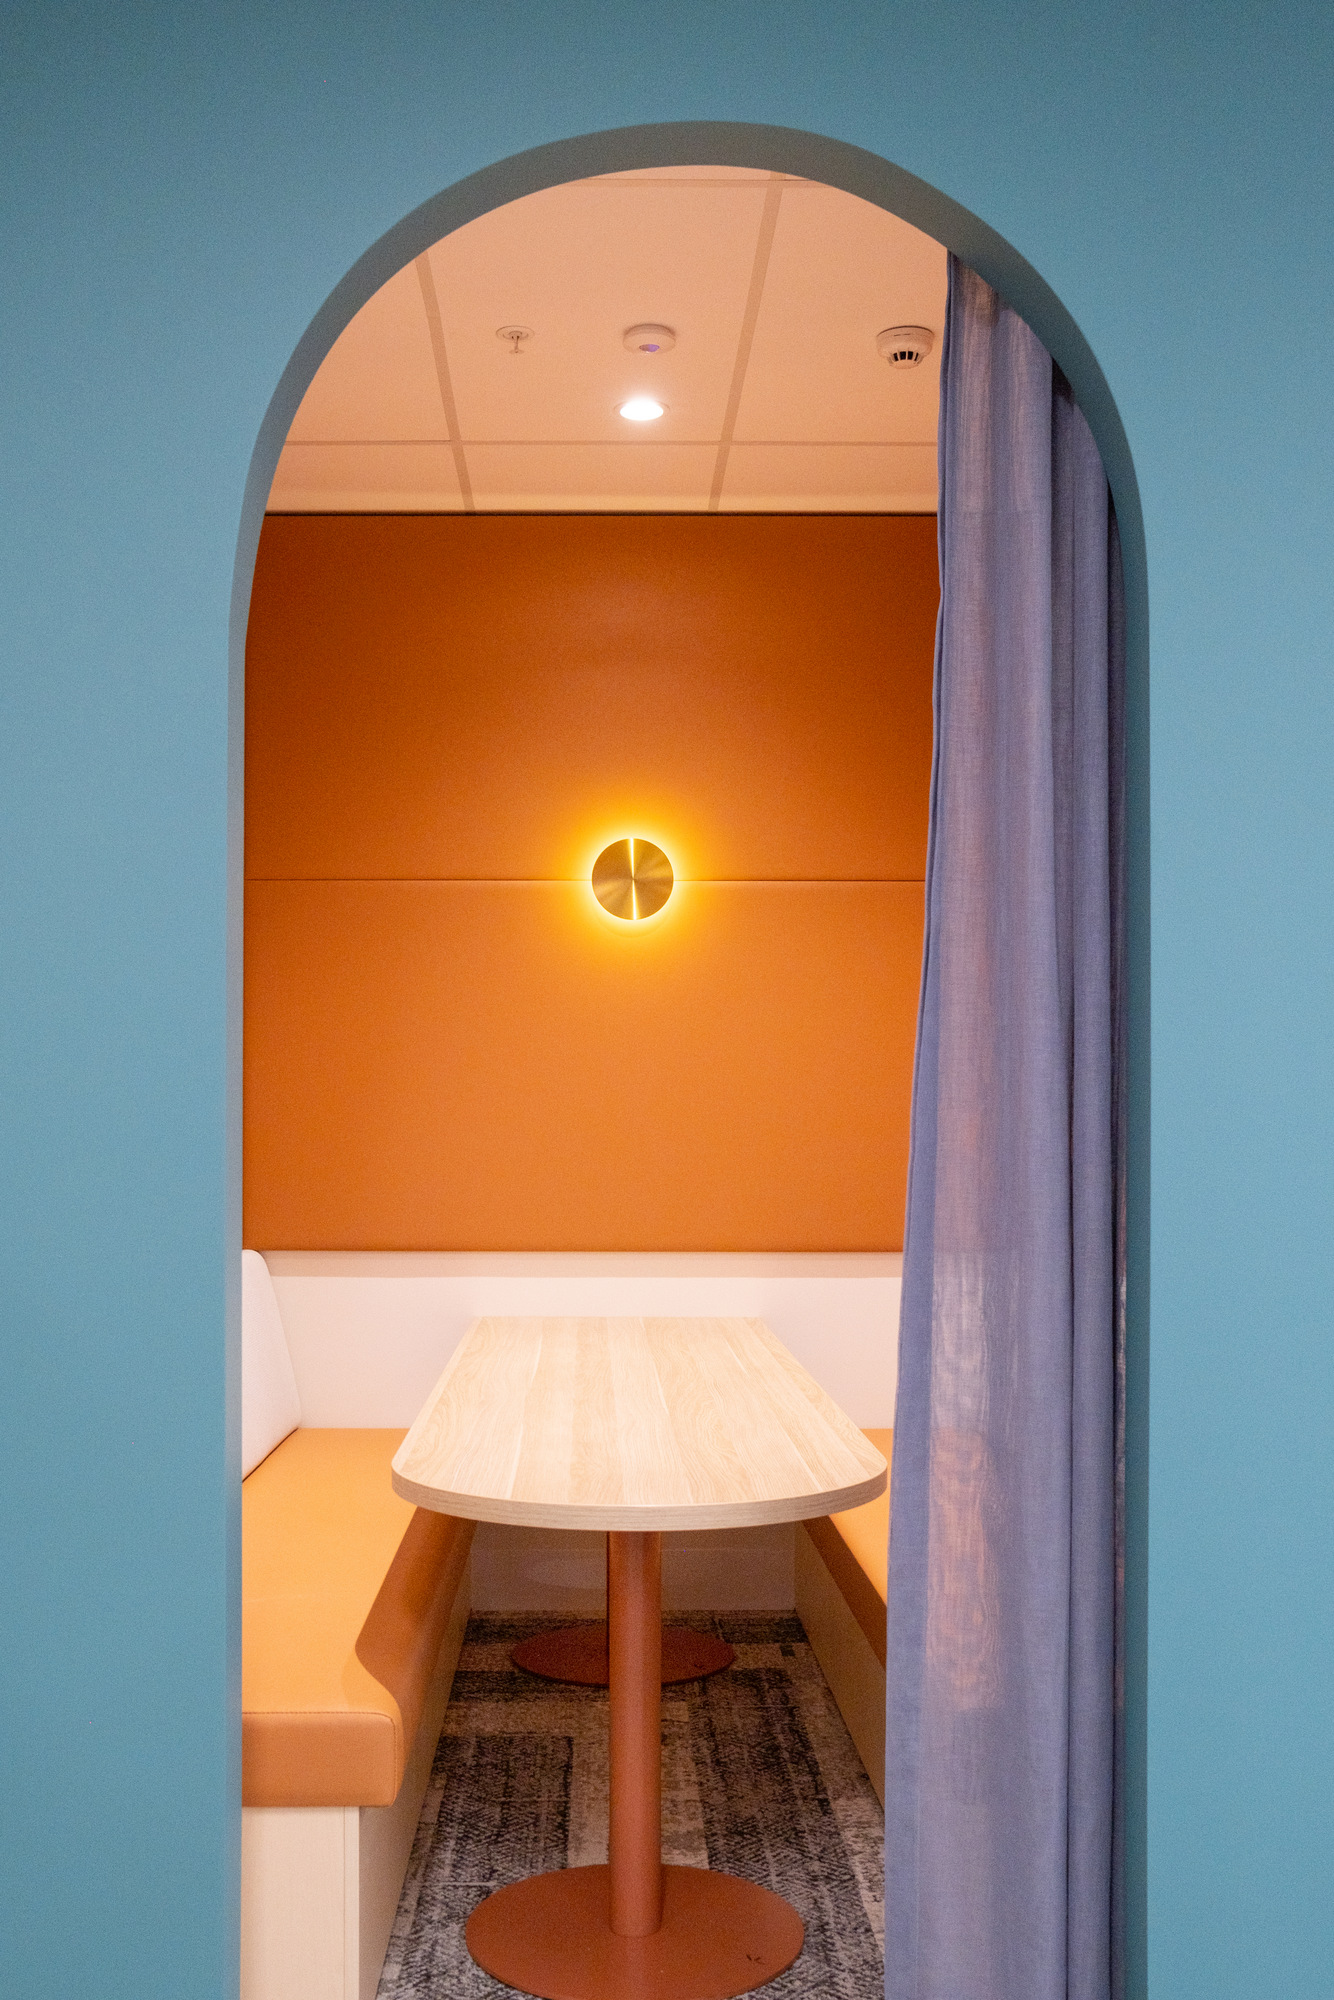 图片[8]|希尔顿办公室-悉尼|ART-Arrakis | 建筑室内设计的创新与灵感